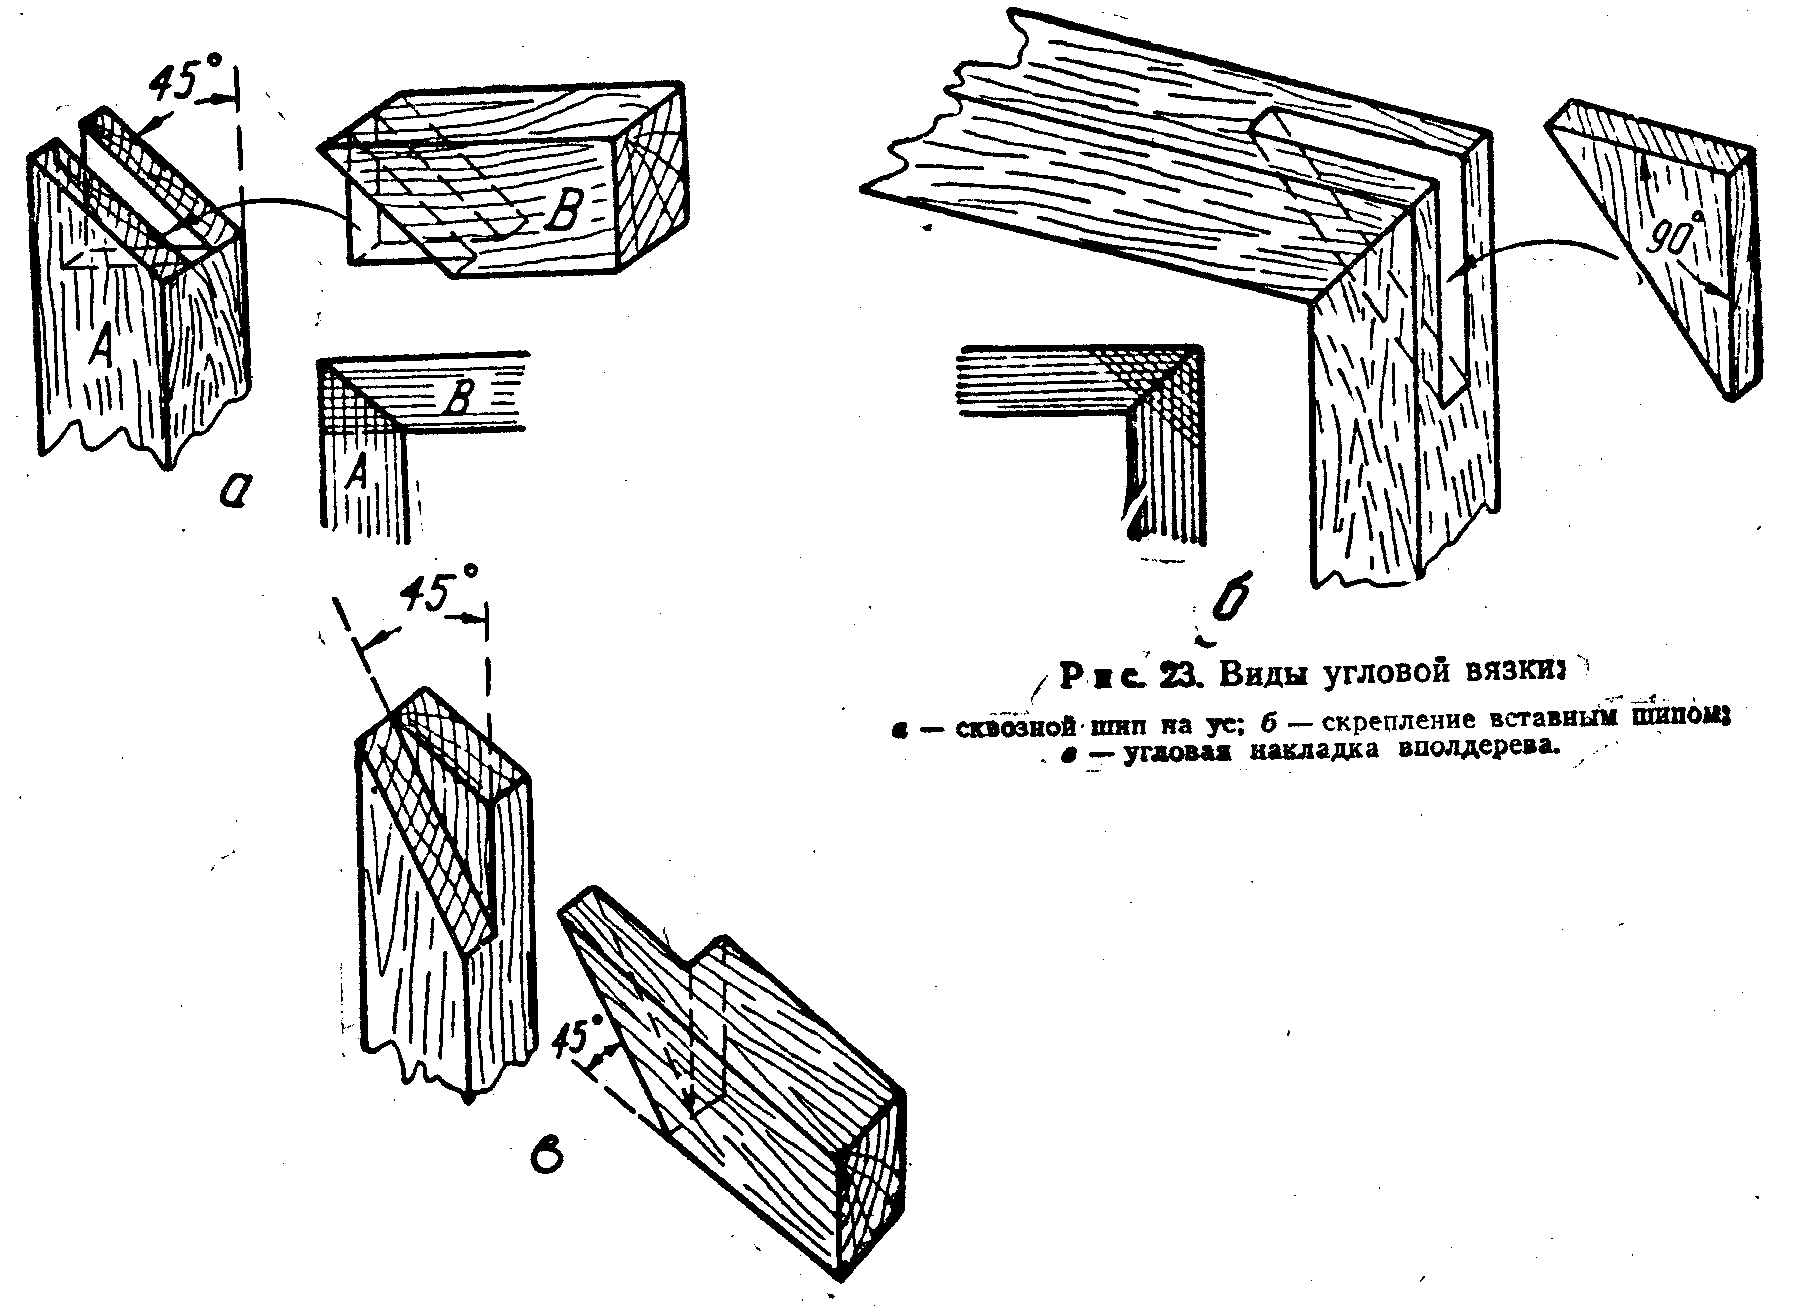 Основные виды соединений деревянных деталей